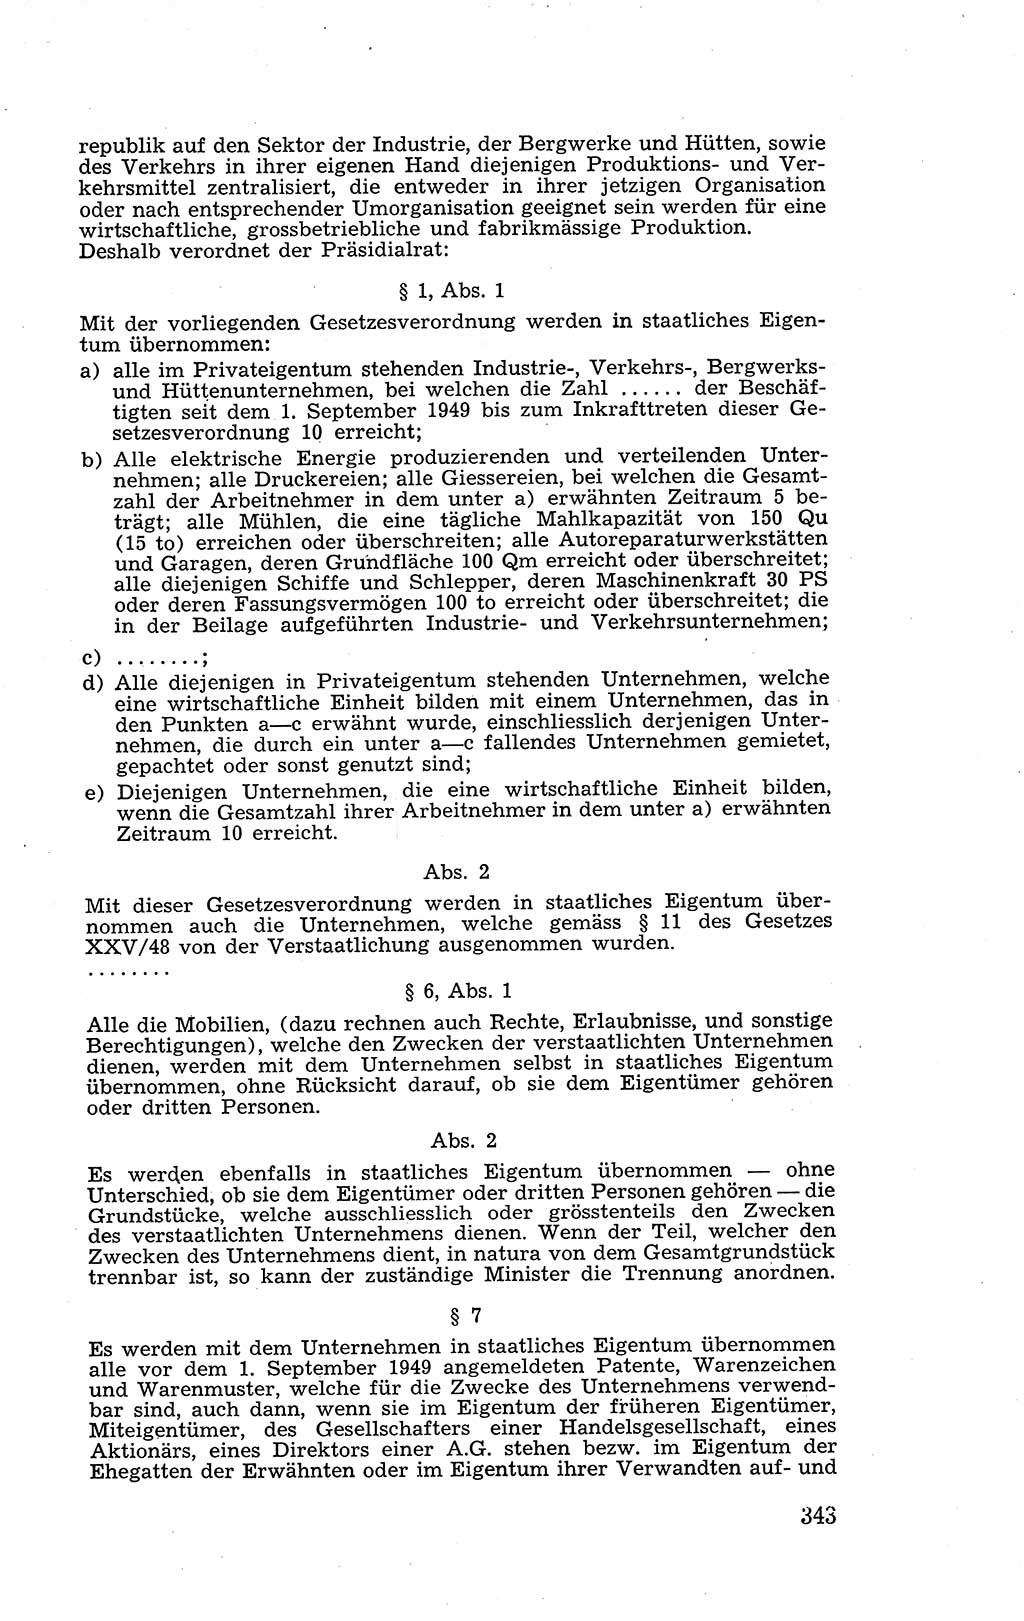 Recht in Fesseln, Dokumente, Internationale Juristen-Kommission [Bundesrepublik Deutschland (BRD)] 1955, Seite 343 (R. Dok. IJK BRD 1955, S. 343)